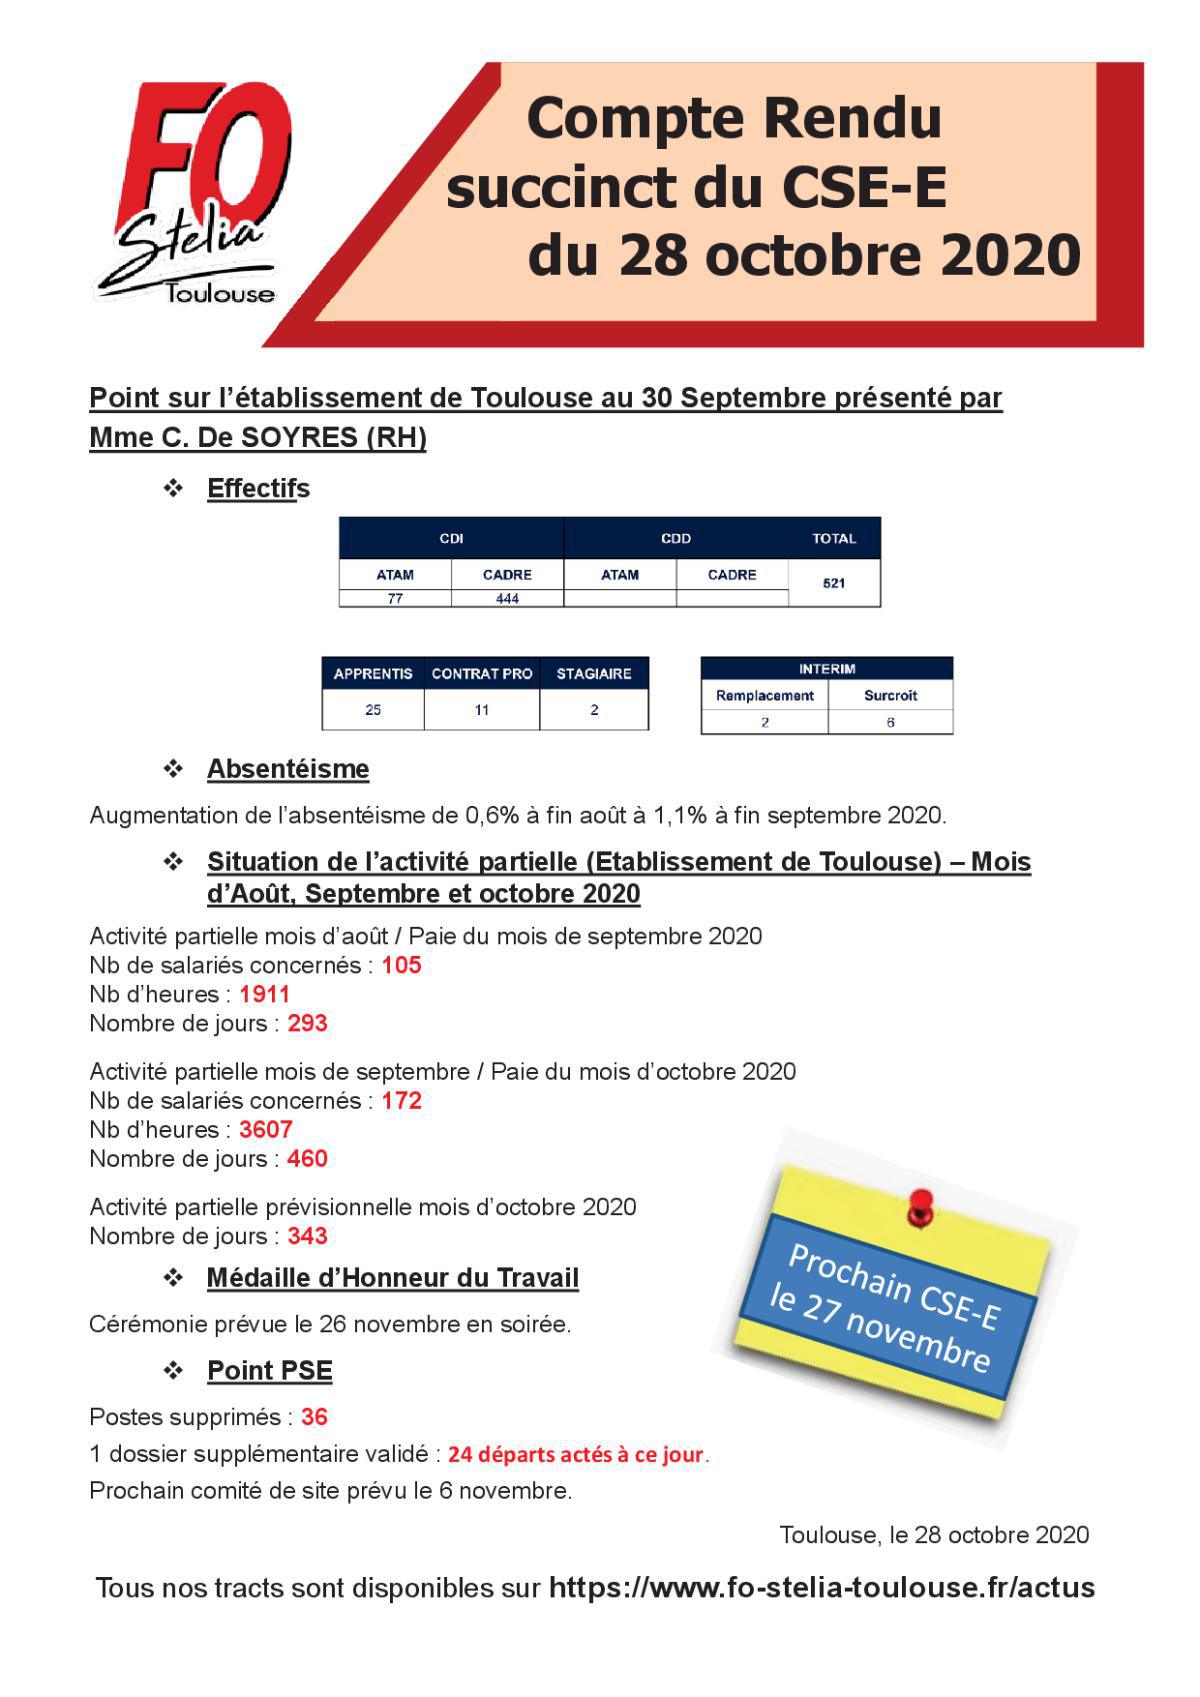 Flash Info : CR succinct du CSE-E du 28 octobre 2020